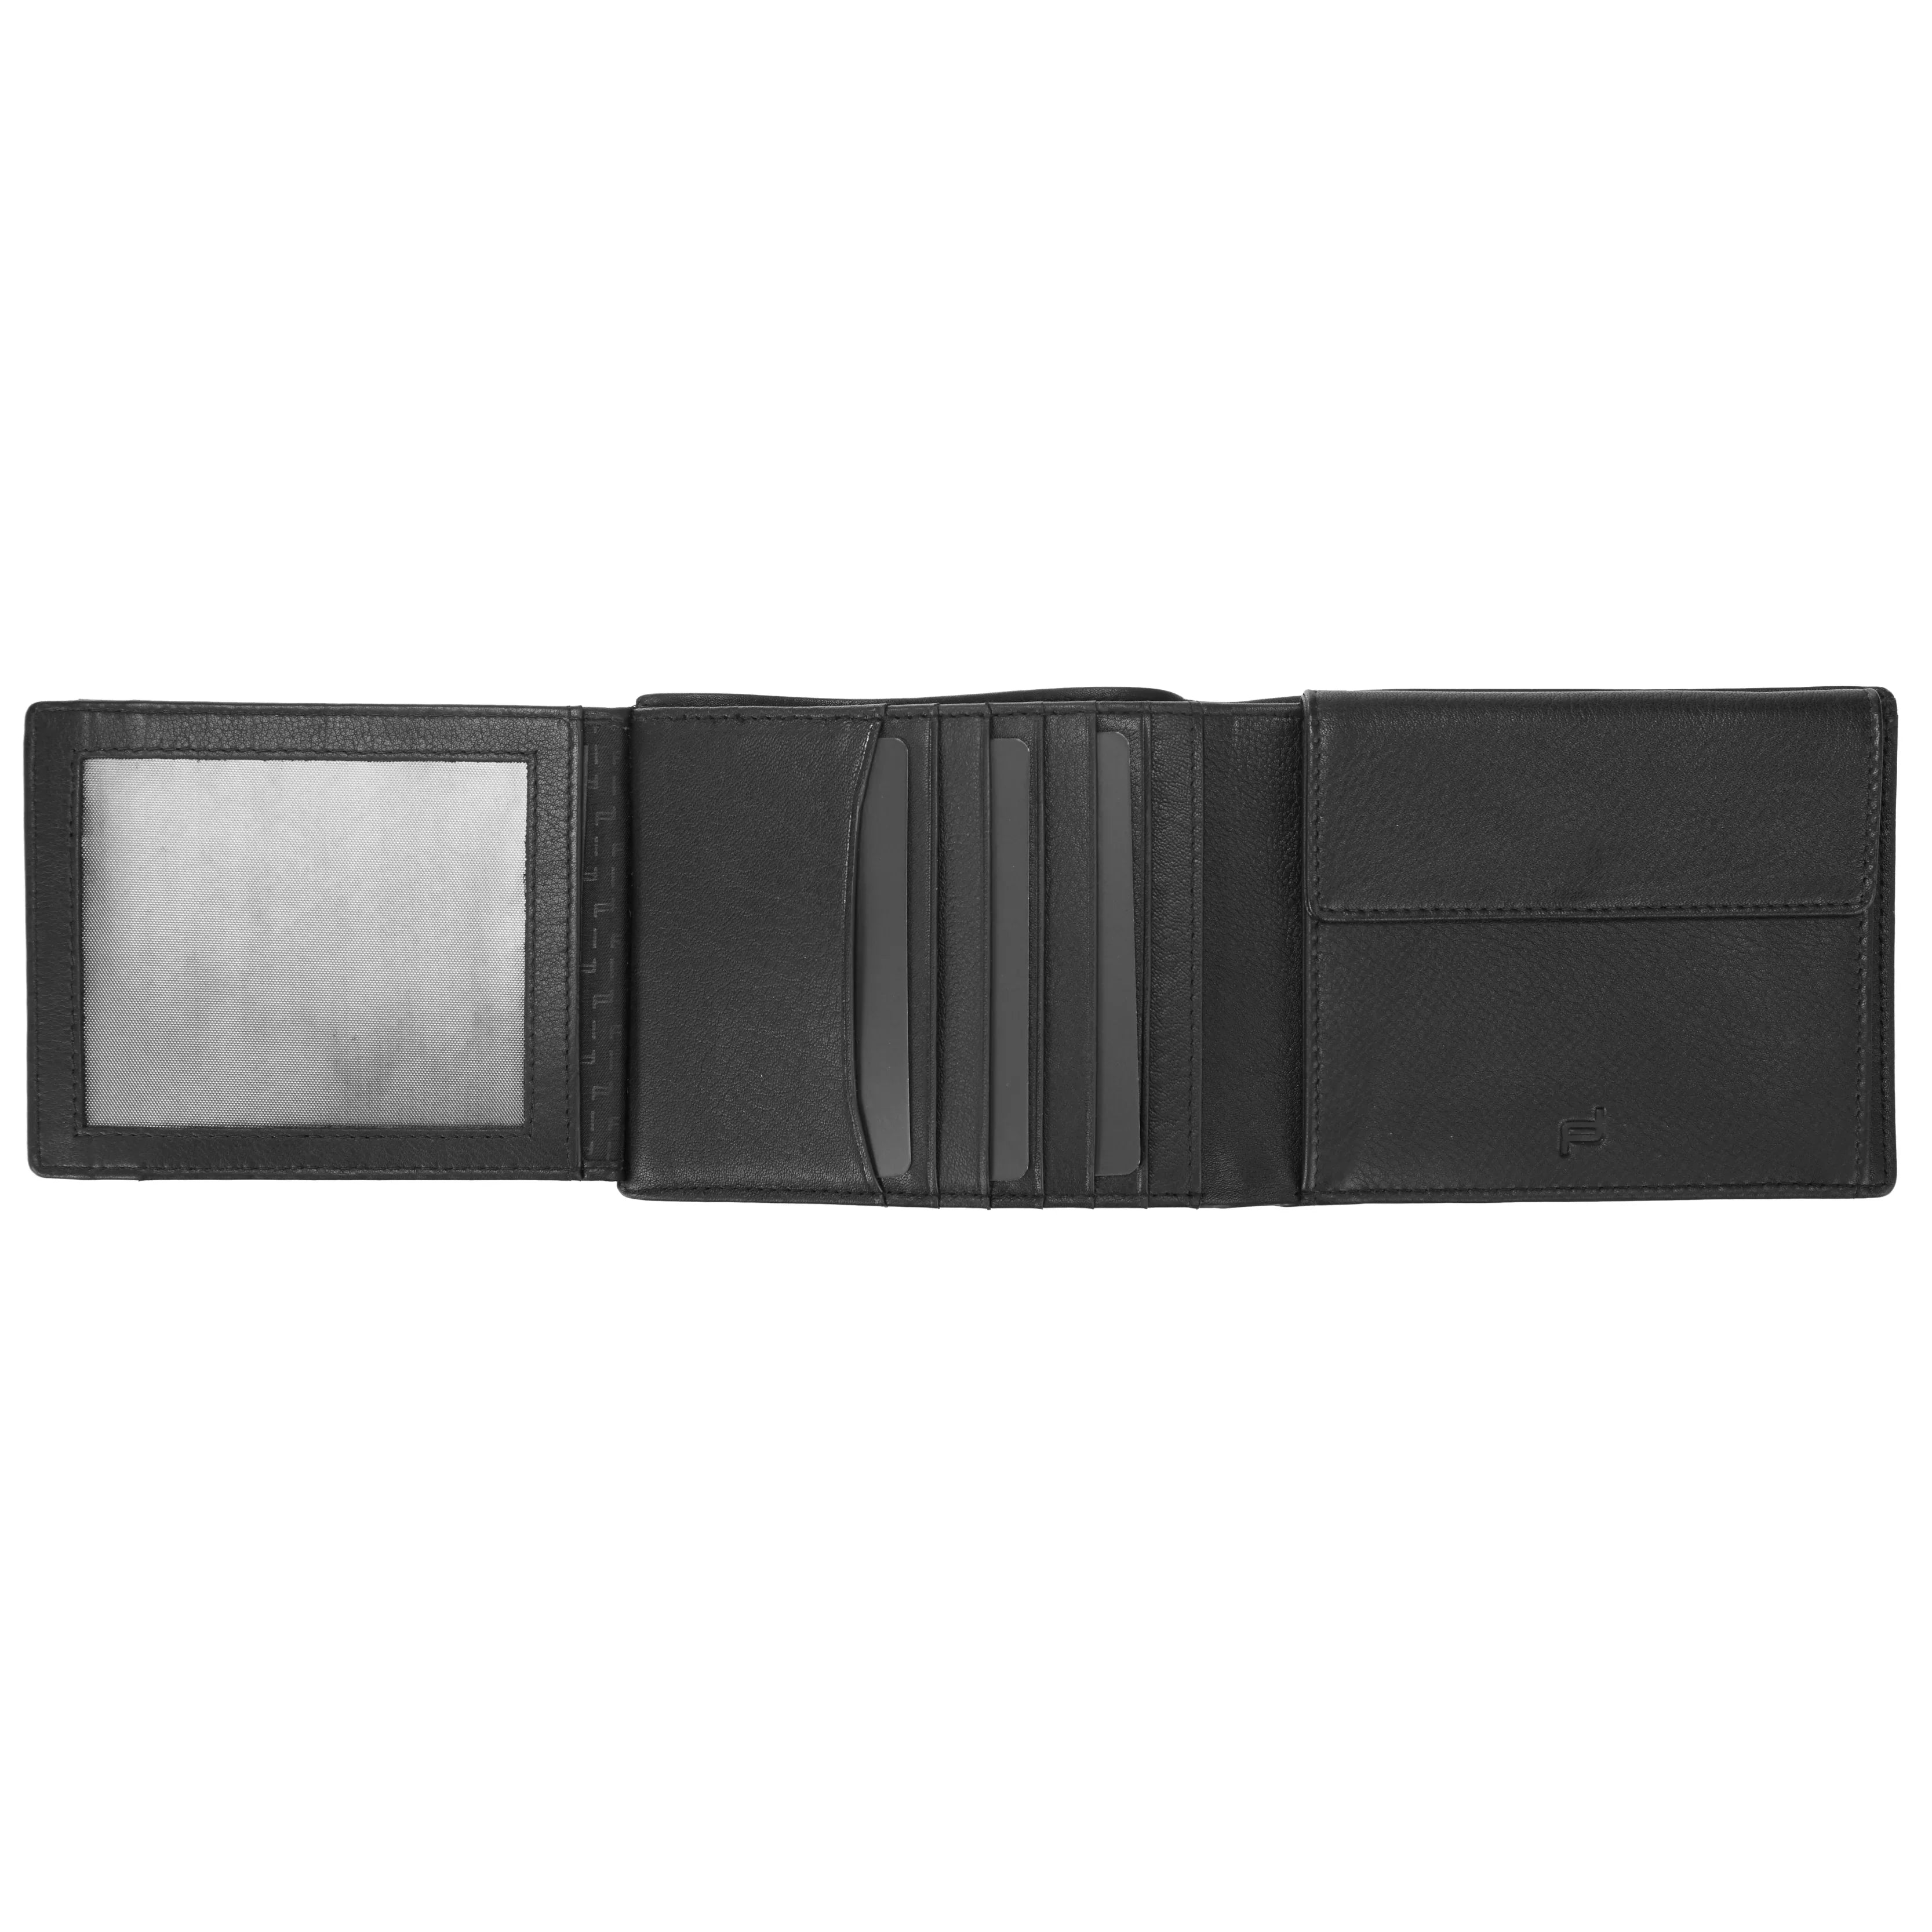 Porsche Design Accessories Business Wallet 10 RFID 12 cm - Dark Brown